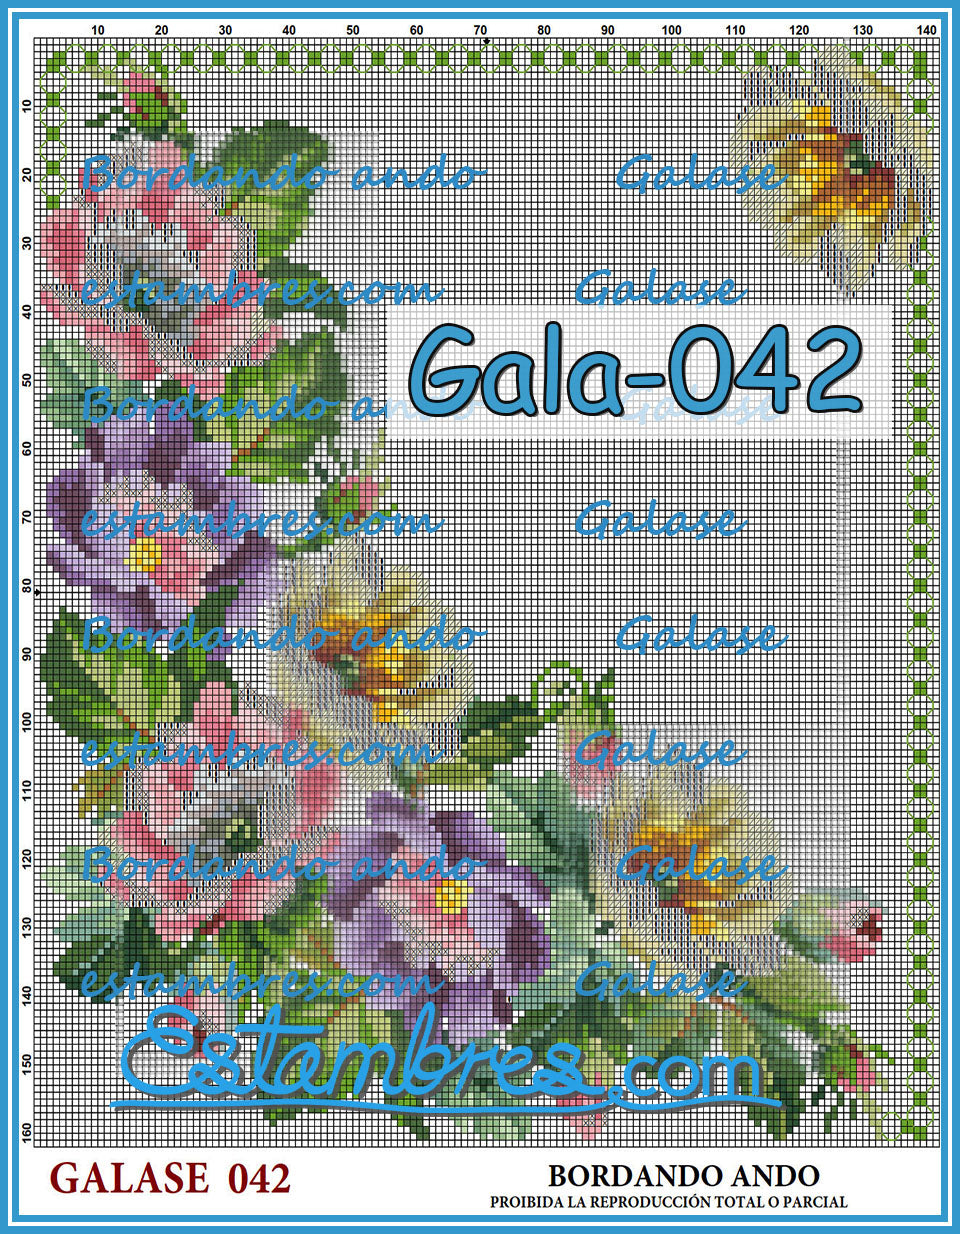 GALASE [001-070] - 1 of 7